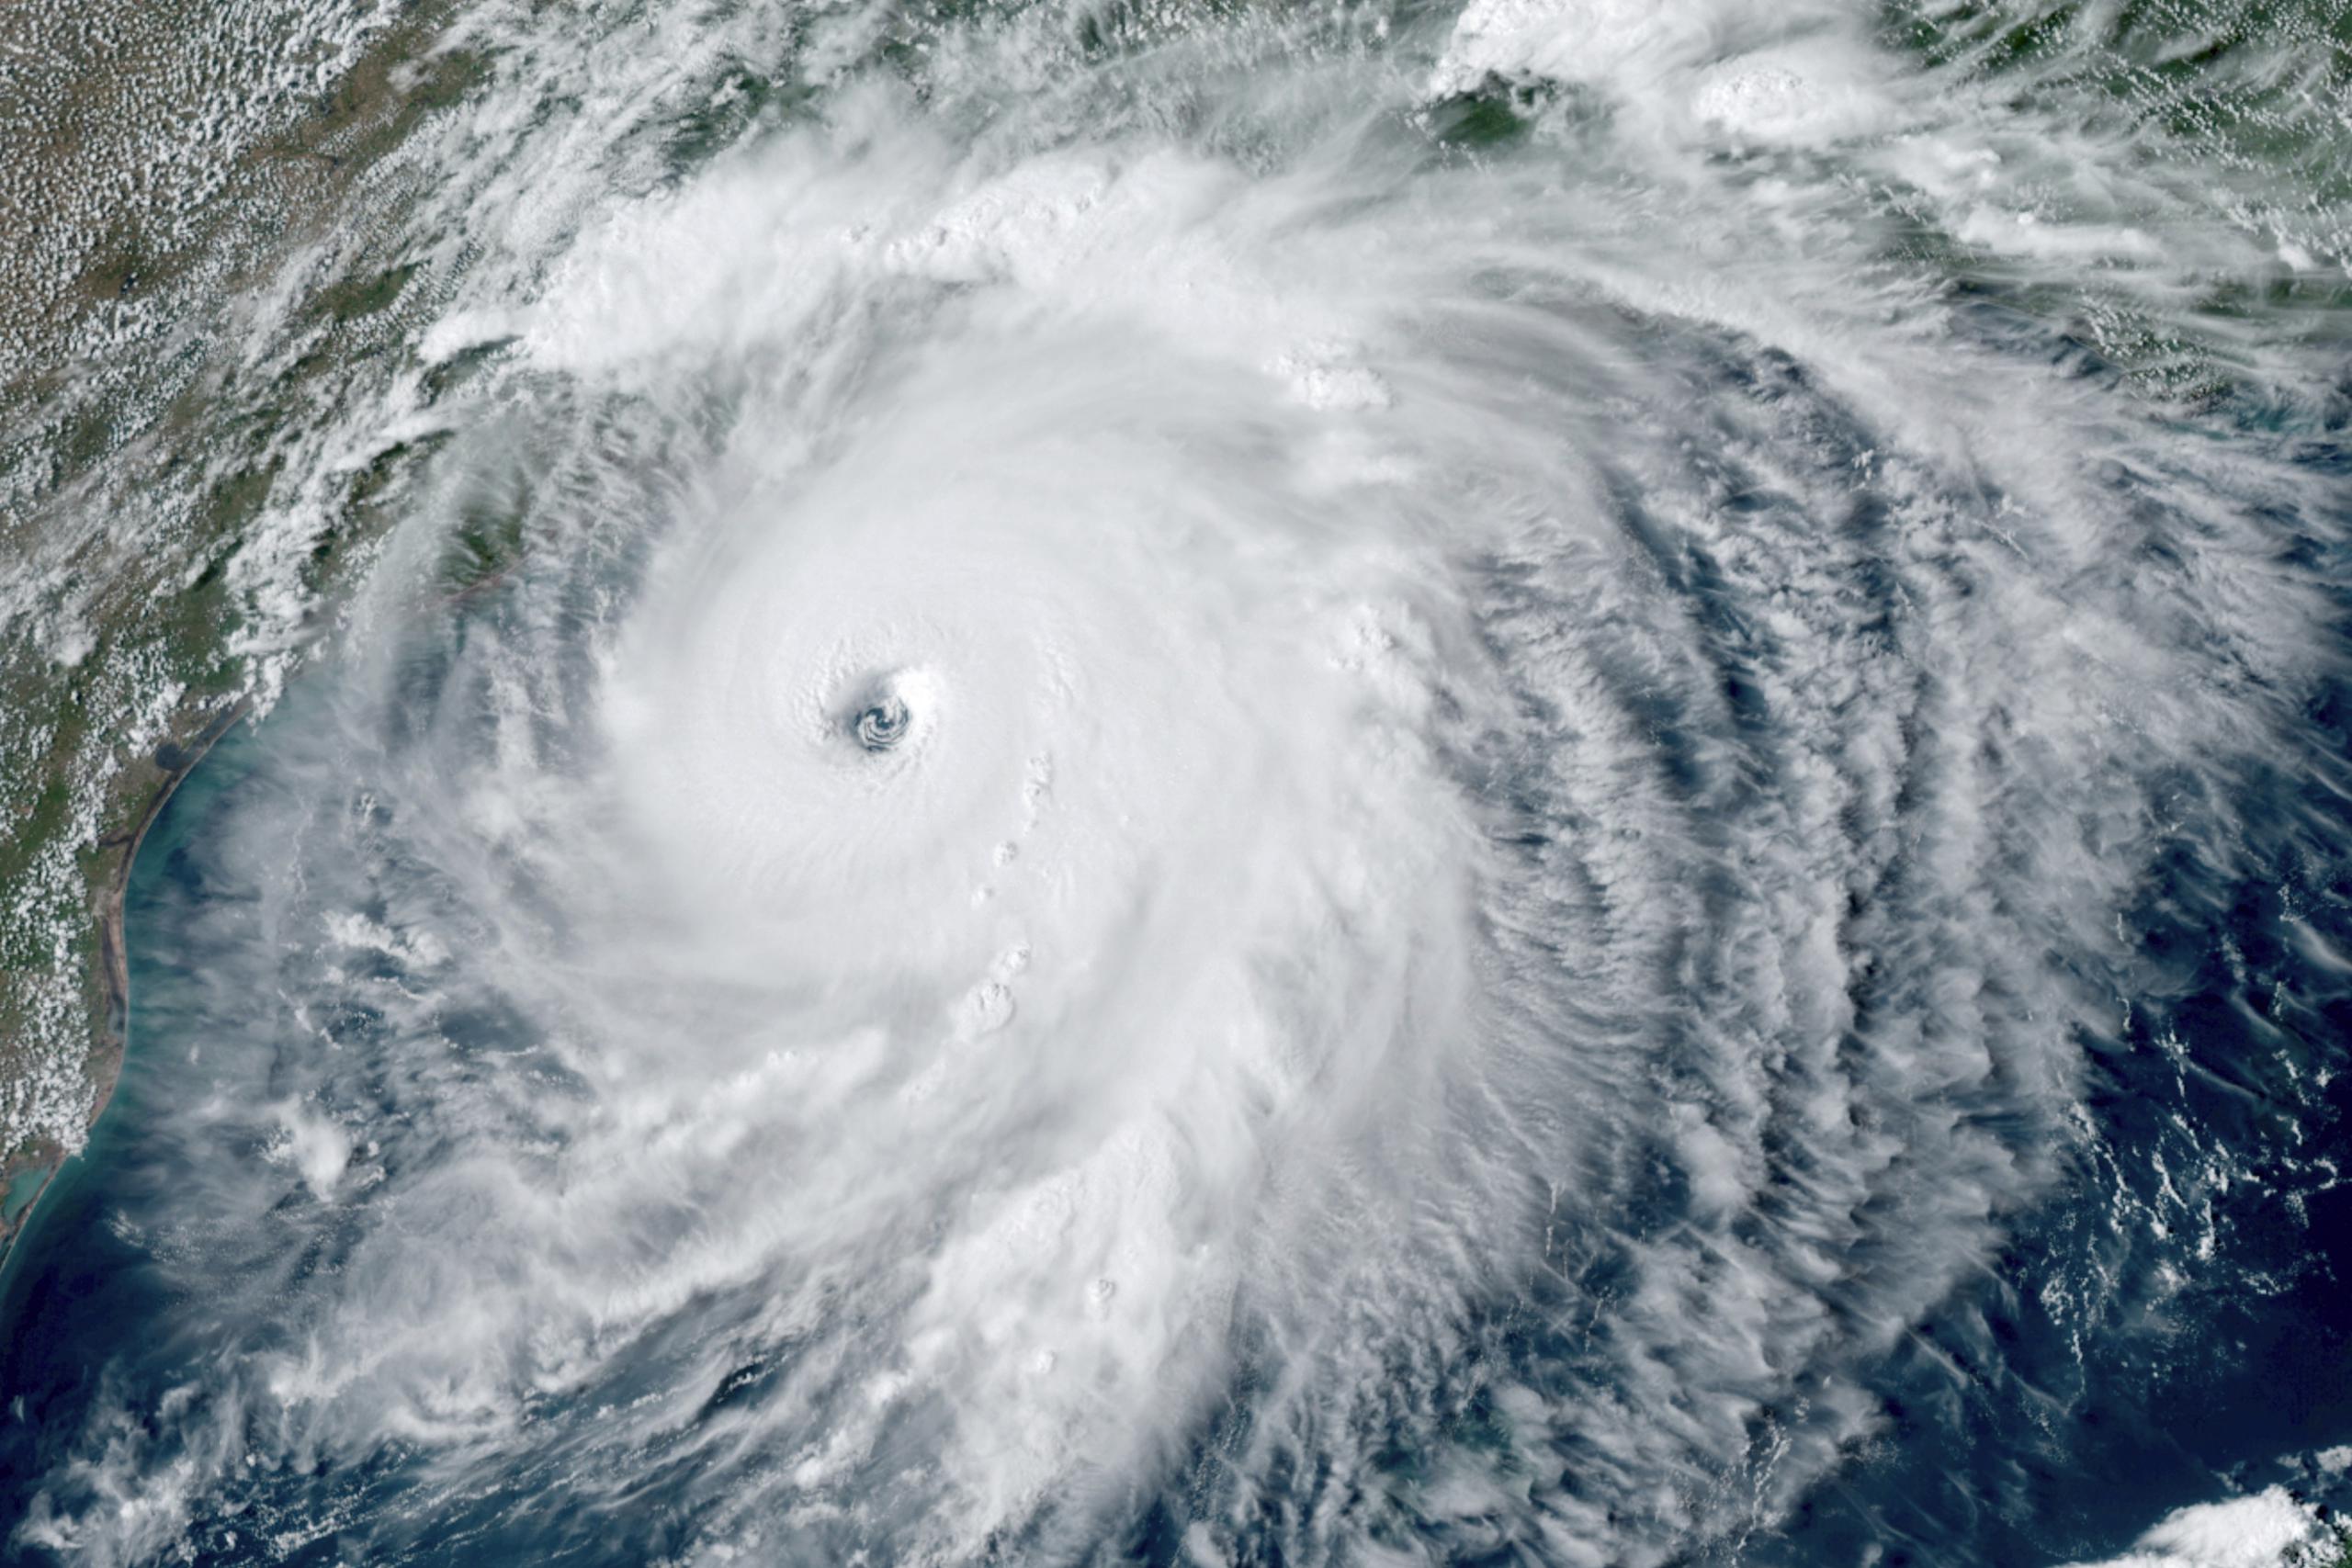 Foto de satélite del huracán Laura, que alcanzó hoy la categoría 4 con vientos máximos sostenidos de 145 millas por hora, acercándose a las costas de Texas y Louisiana.